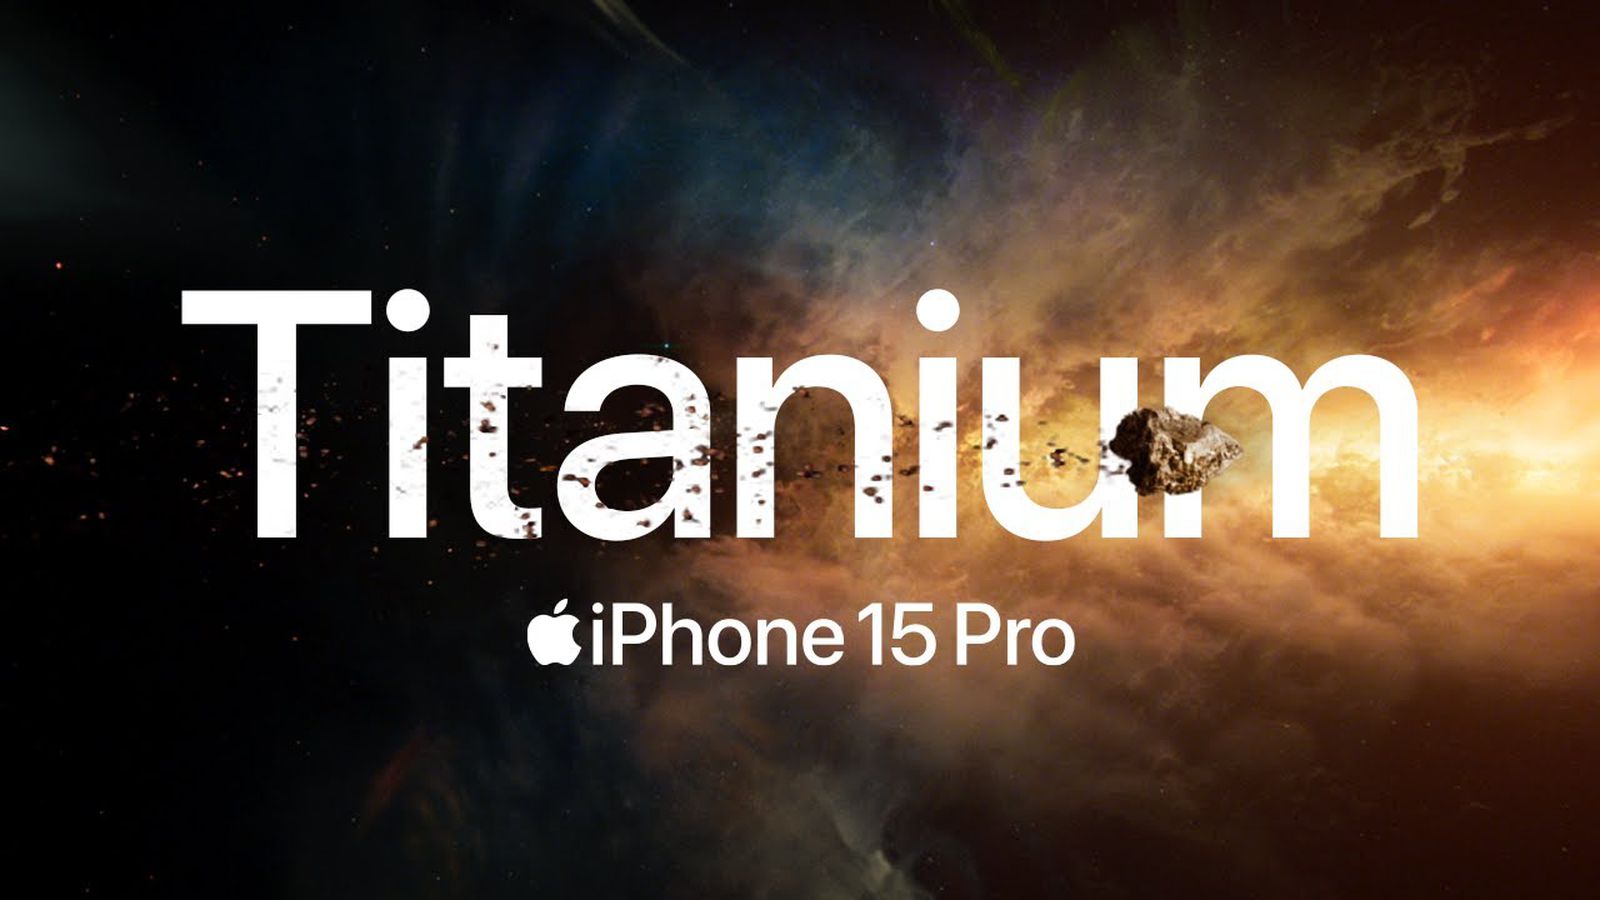 Apple pronkt met de titanium behuizing van de iPhone 15 Pro in een nieuwe advertentie